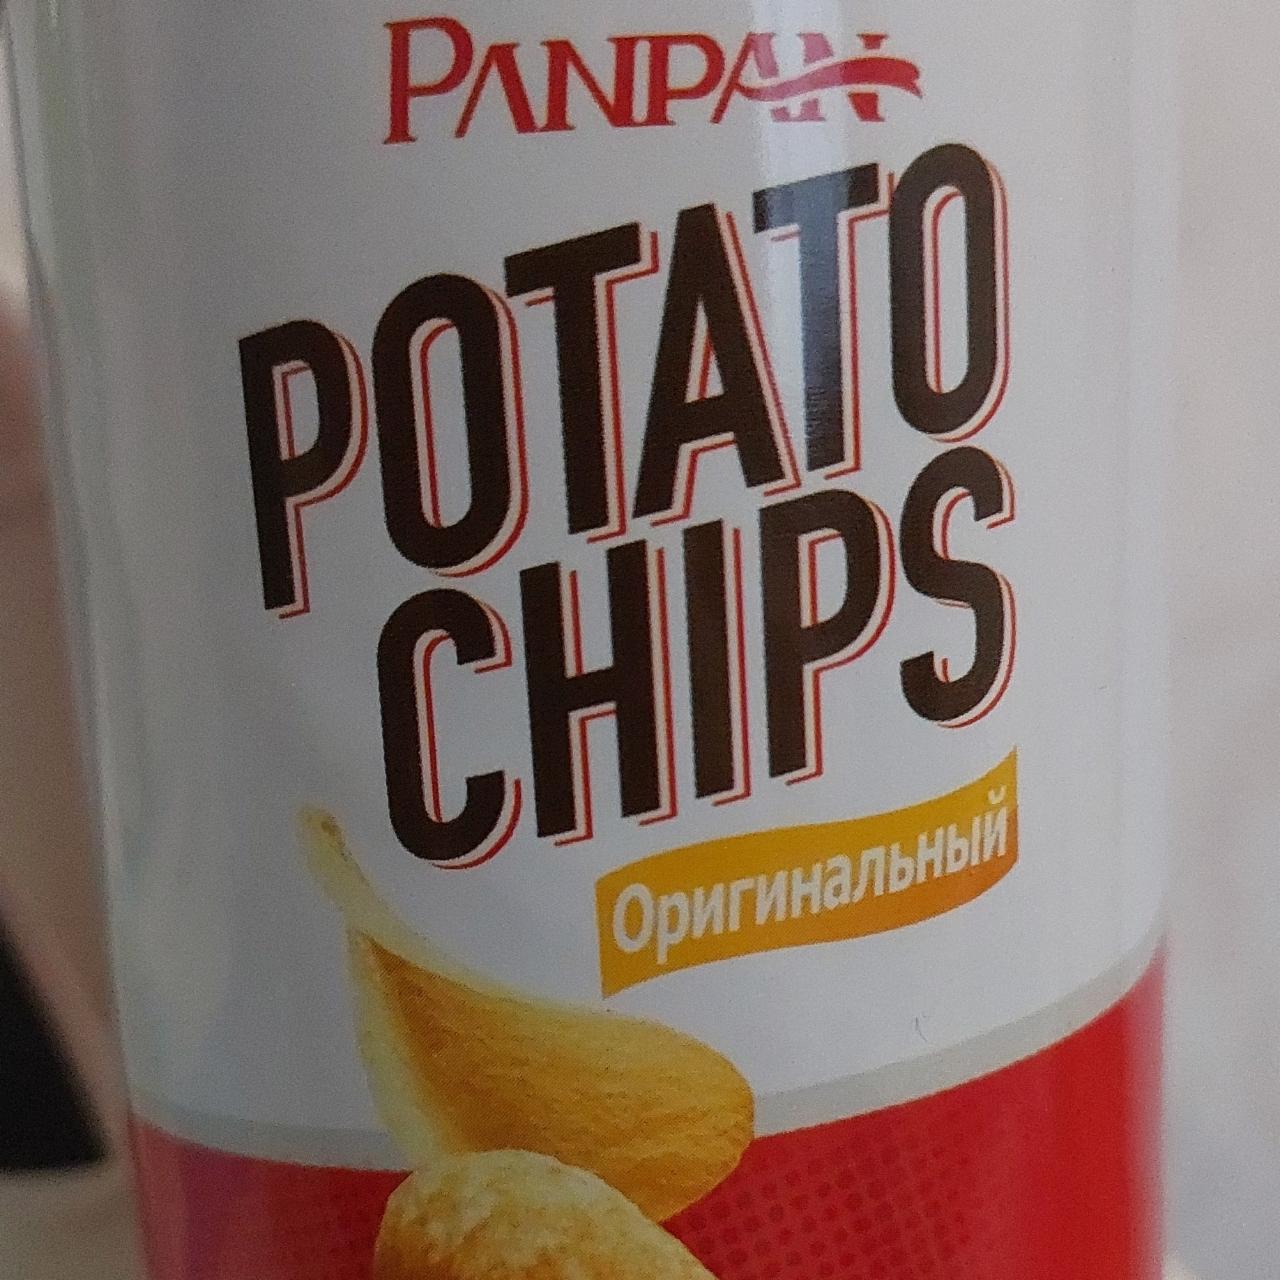 Фото - Чипсы картофельные Potato Chips оригинальный вкус Panpan